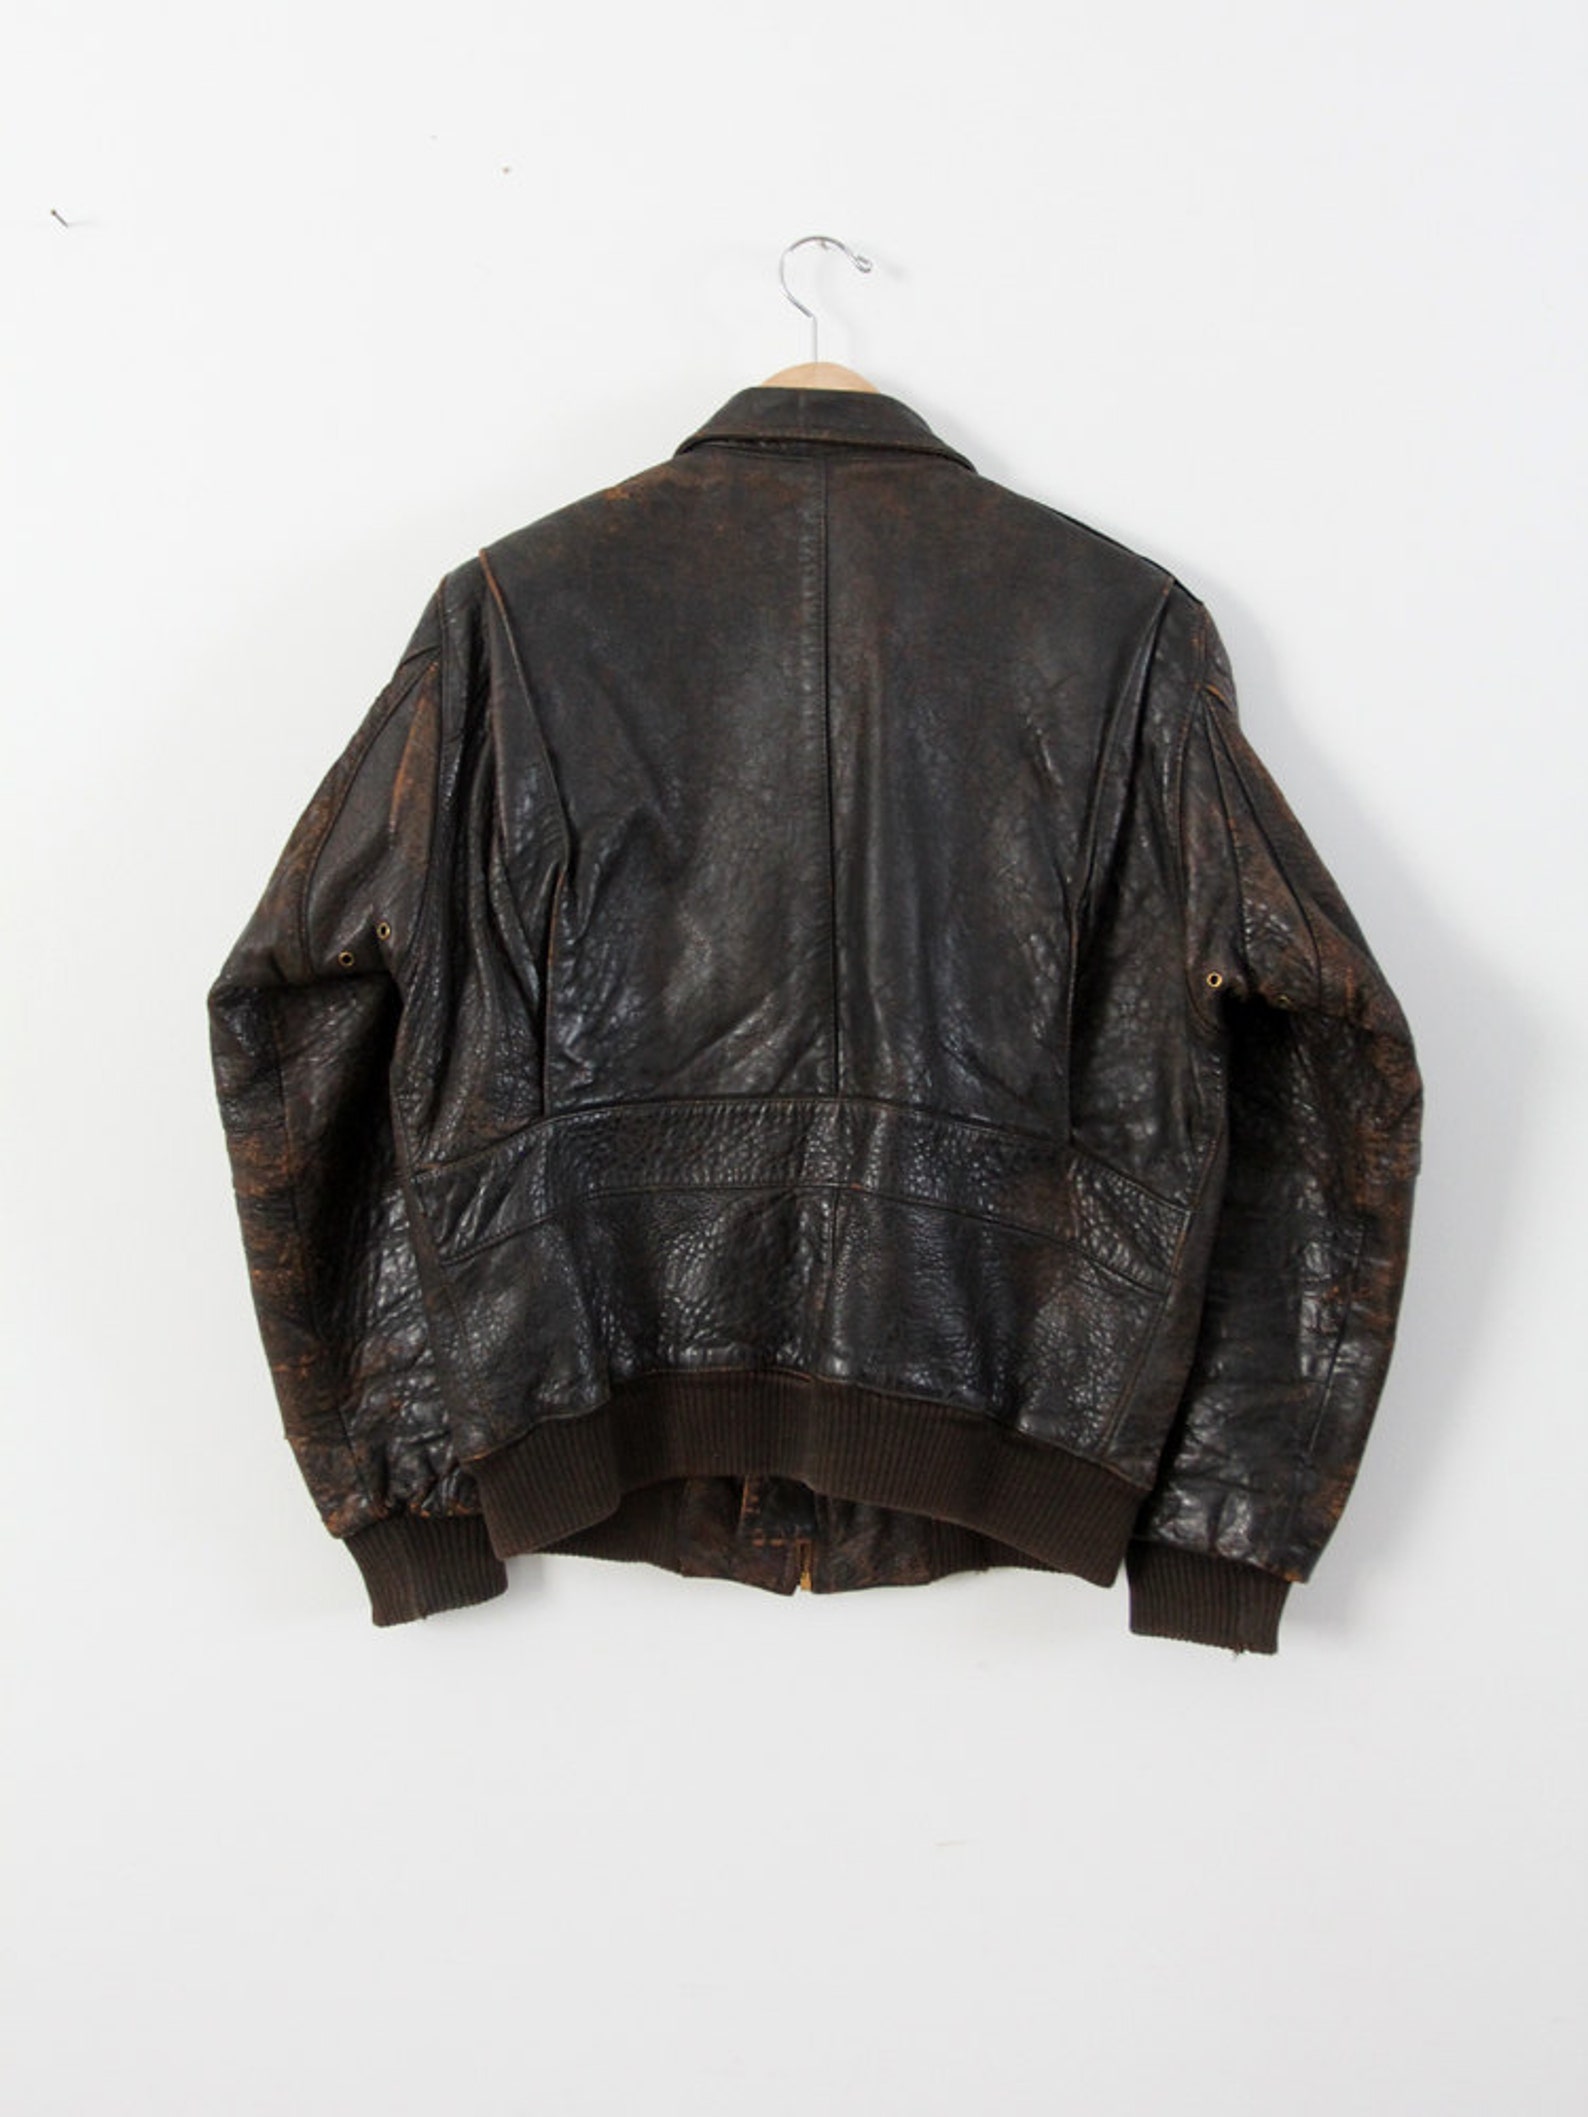 Vintage Bomber Jacket Men's Leather Aviator Jacket - Etsy